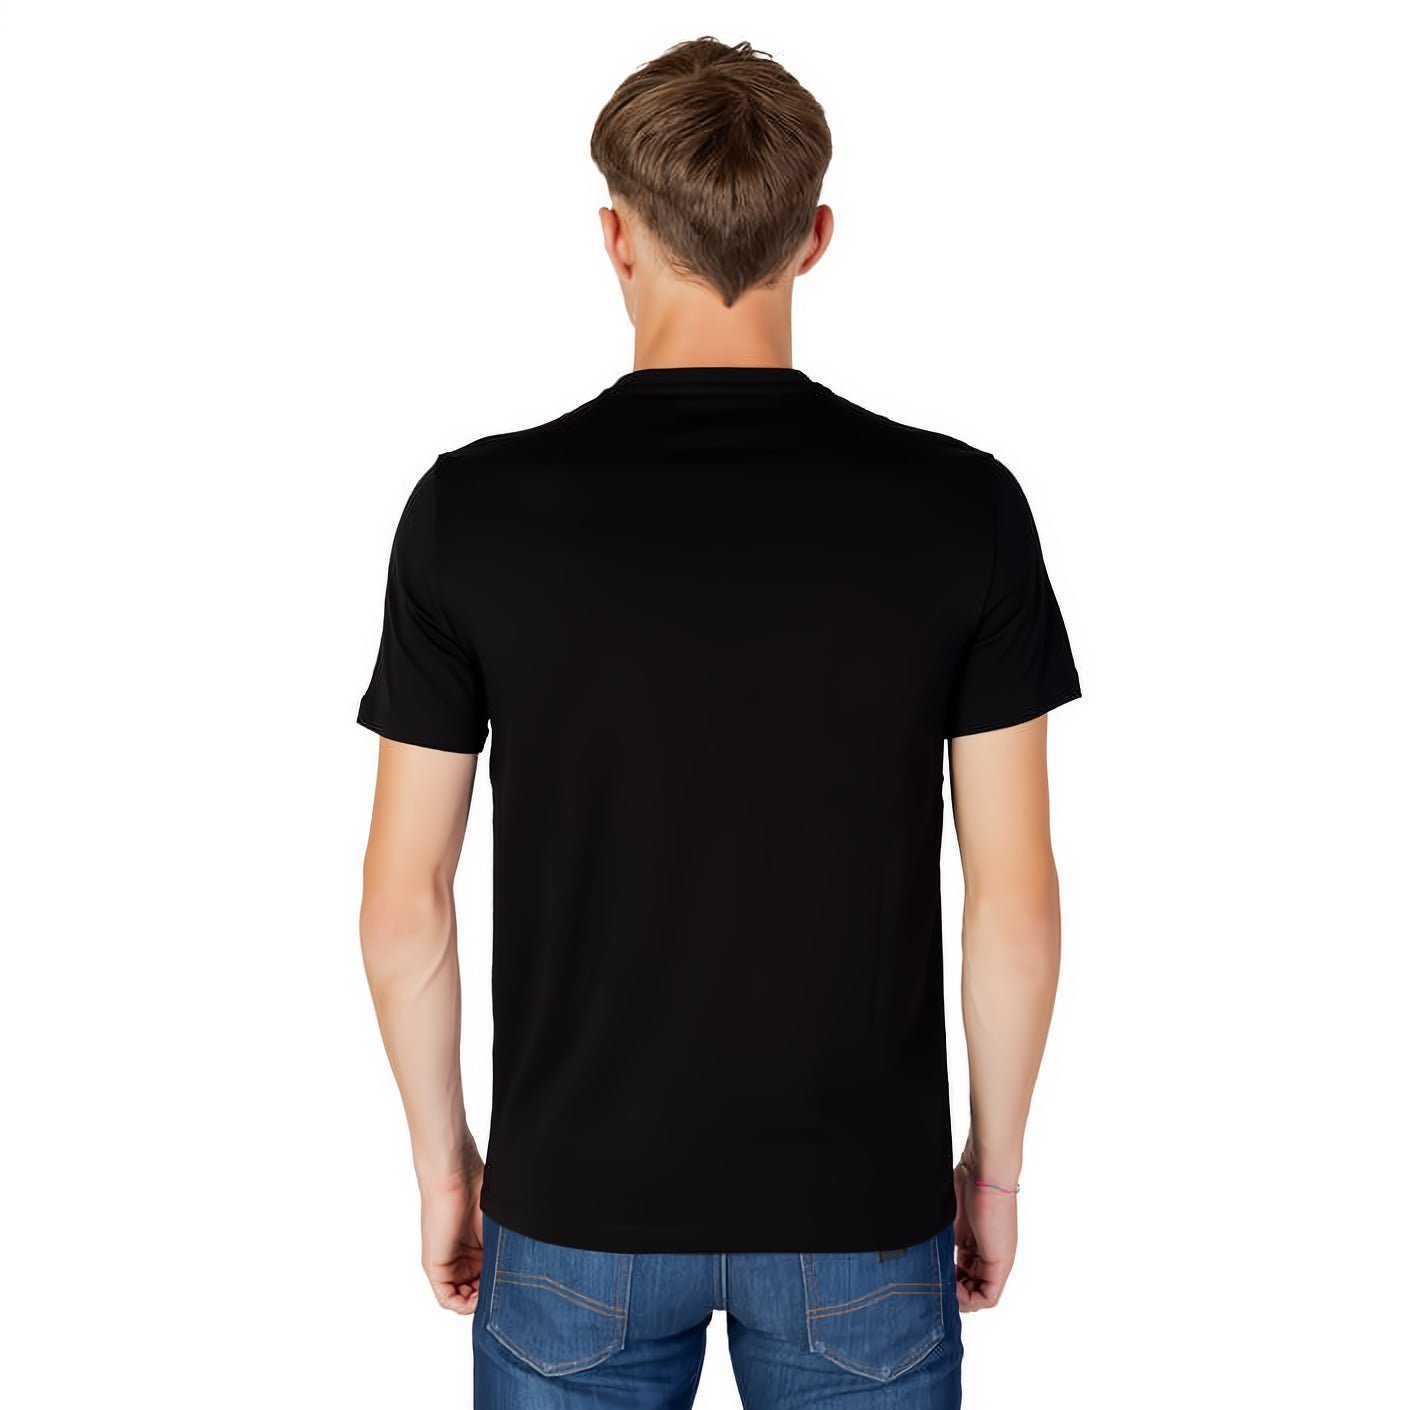 Must-Have kurzarm, ARMANI T-Shirt für EXCHANGE Kleidungskollektion! Rundhals, ein Ihre